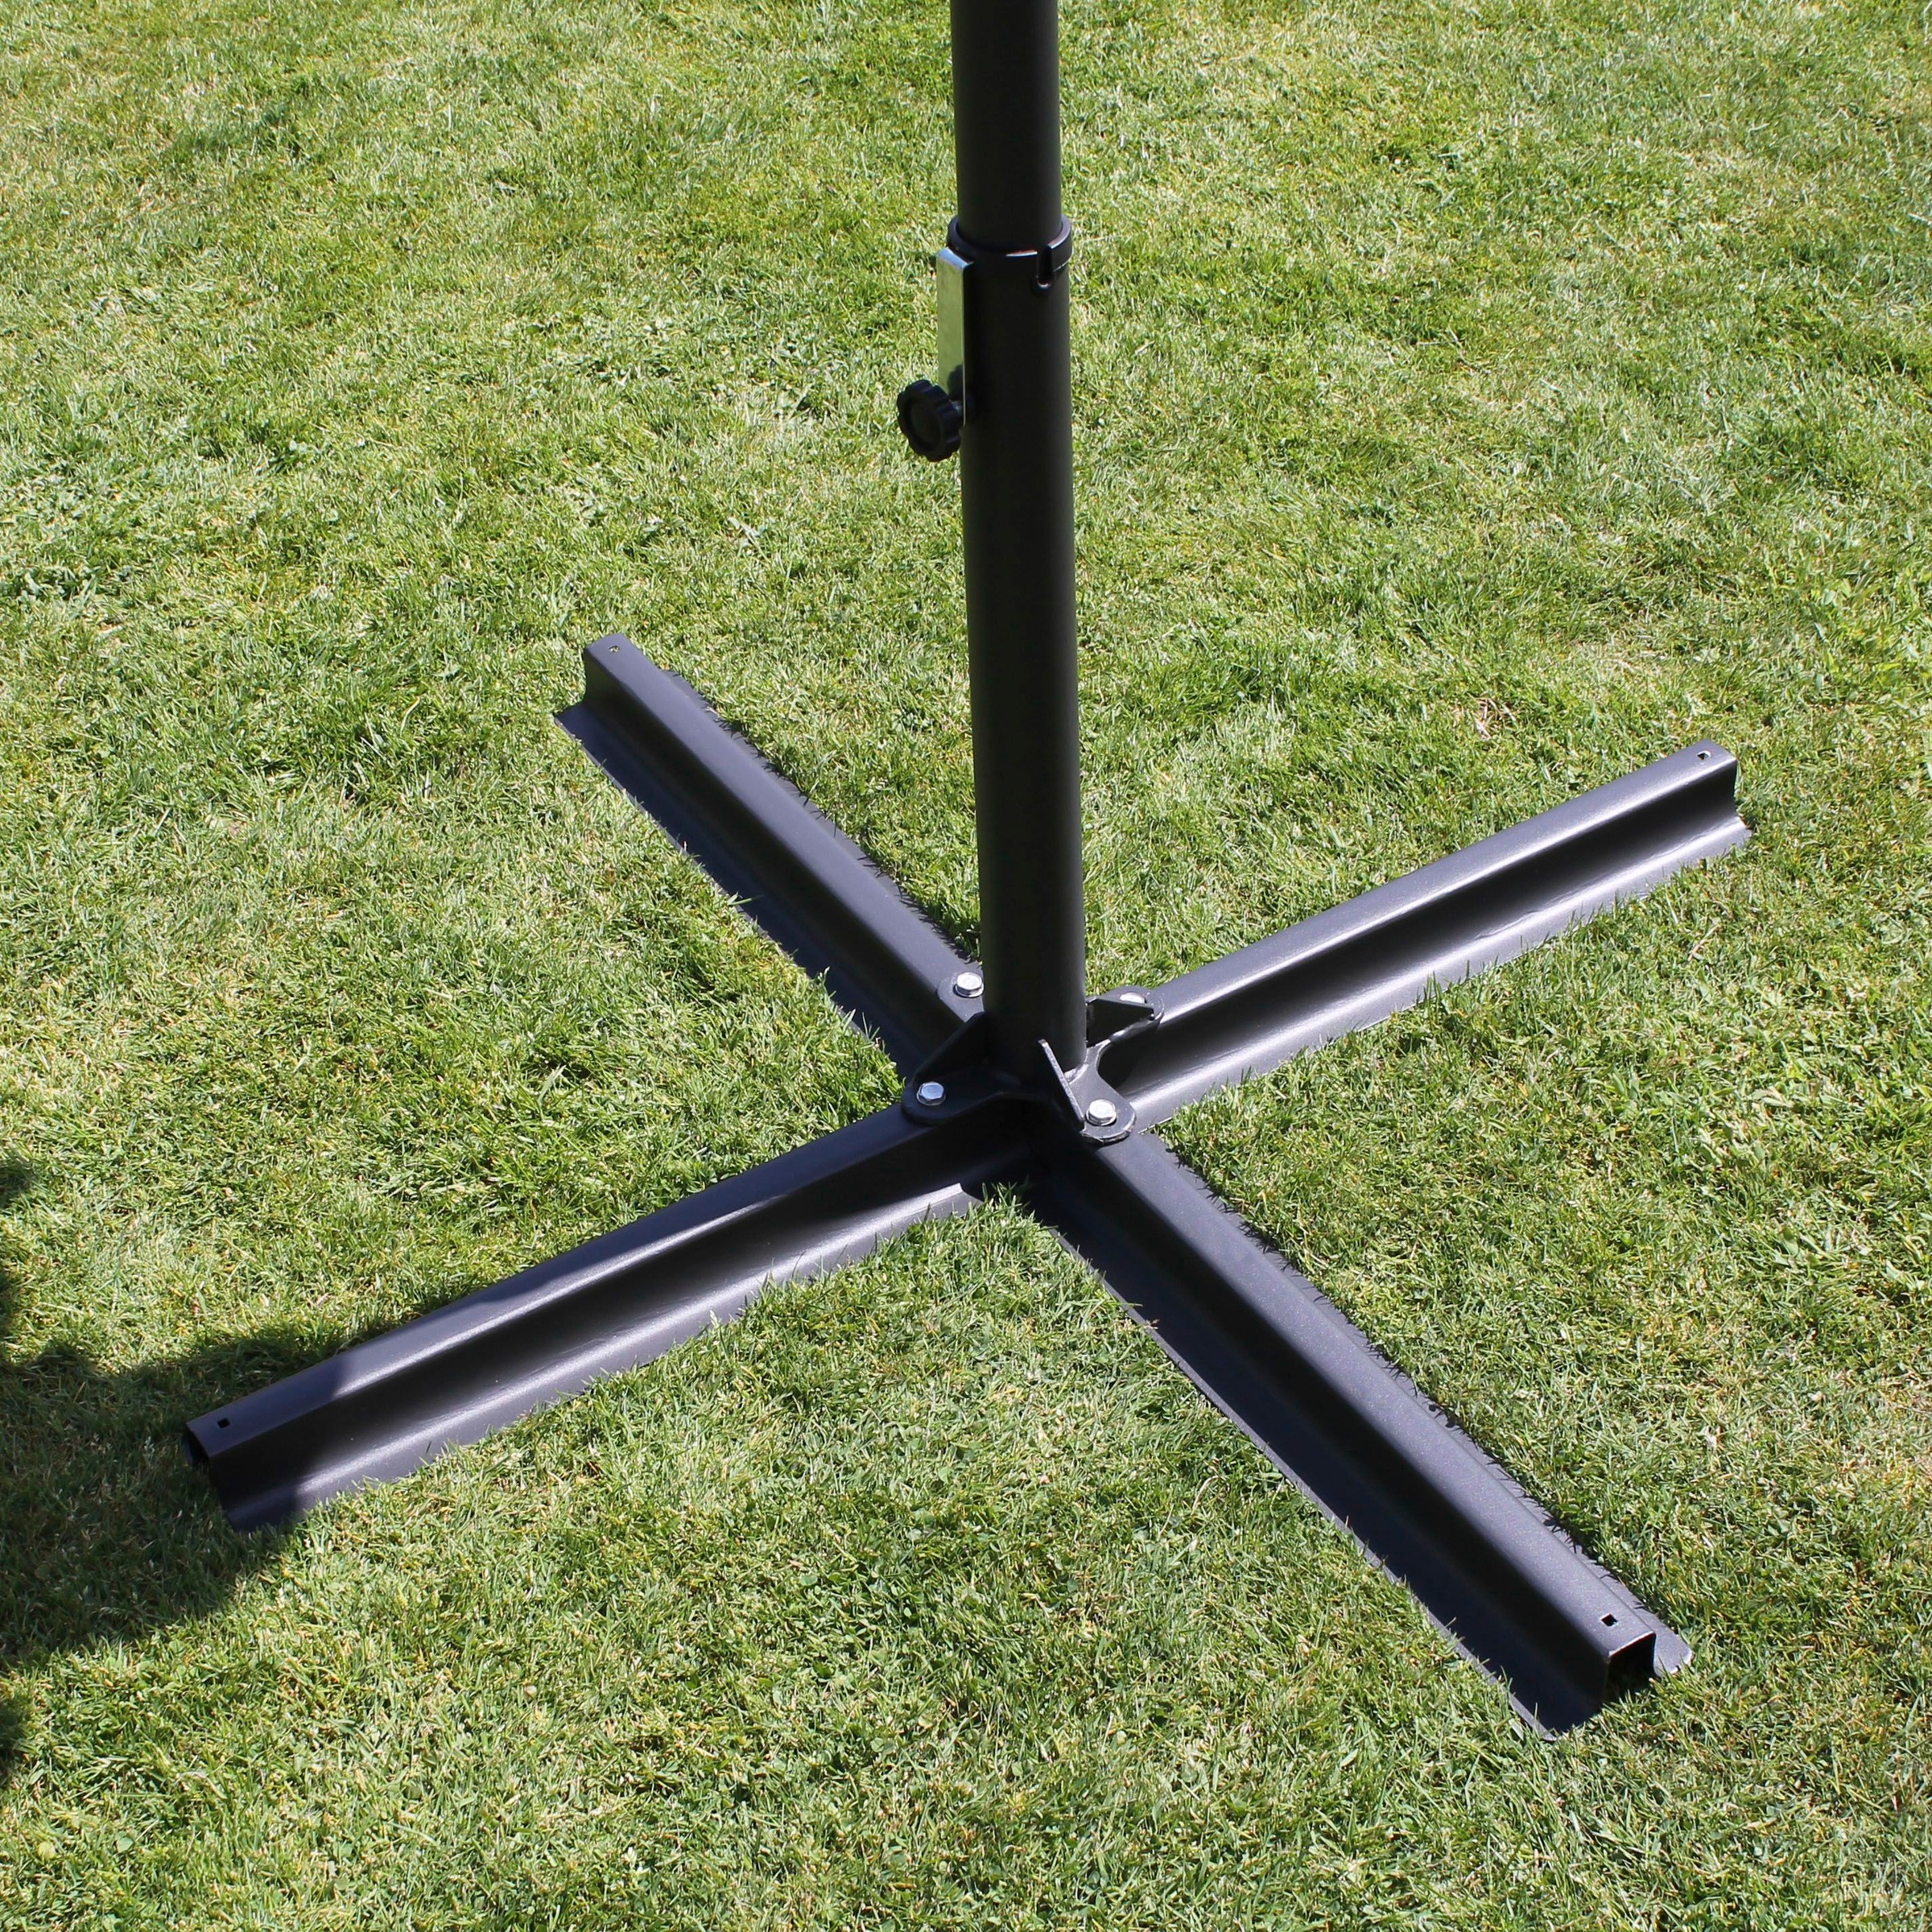 Leco Plattenständer »Kreuzständer aus Stahl«, 100x100 cm passend z.B. für Oval-Schirm (Ohne Sonnenschirm)